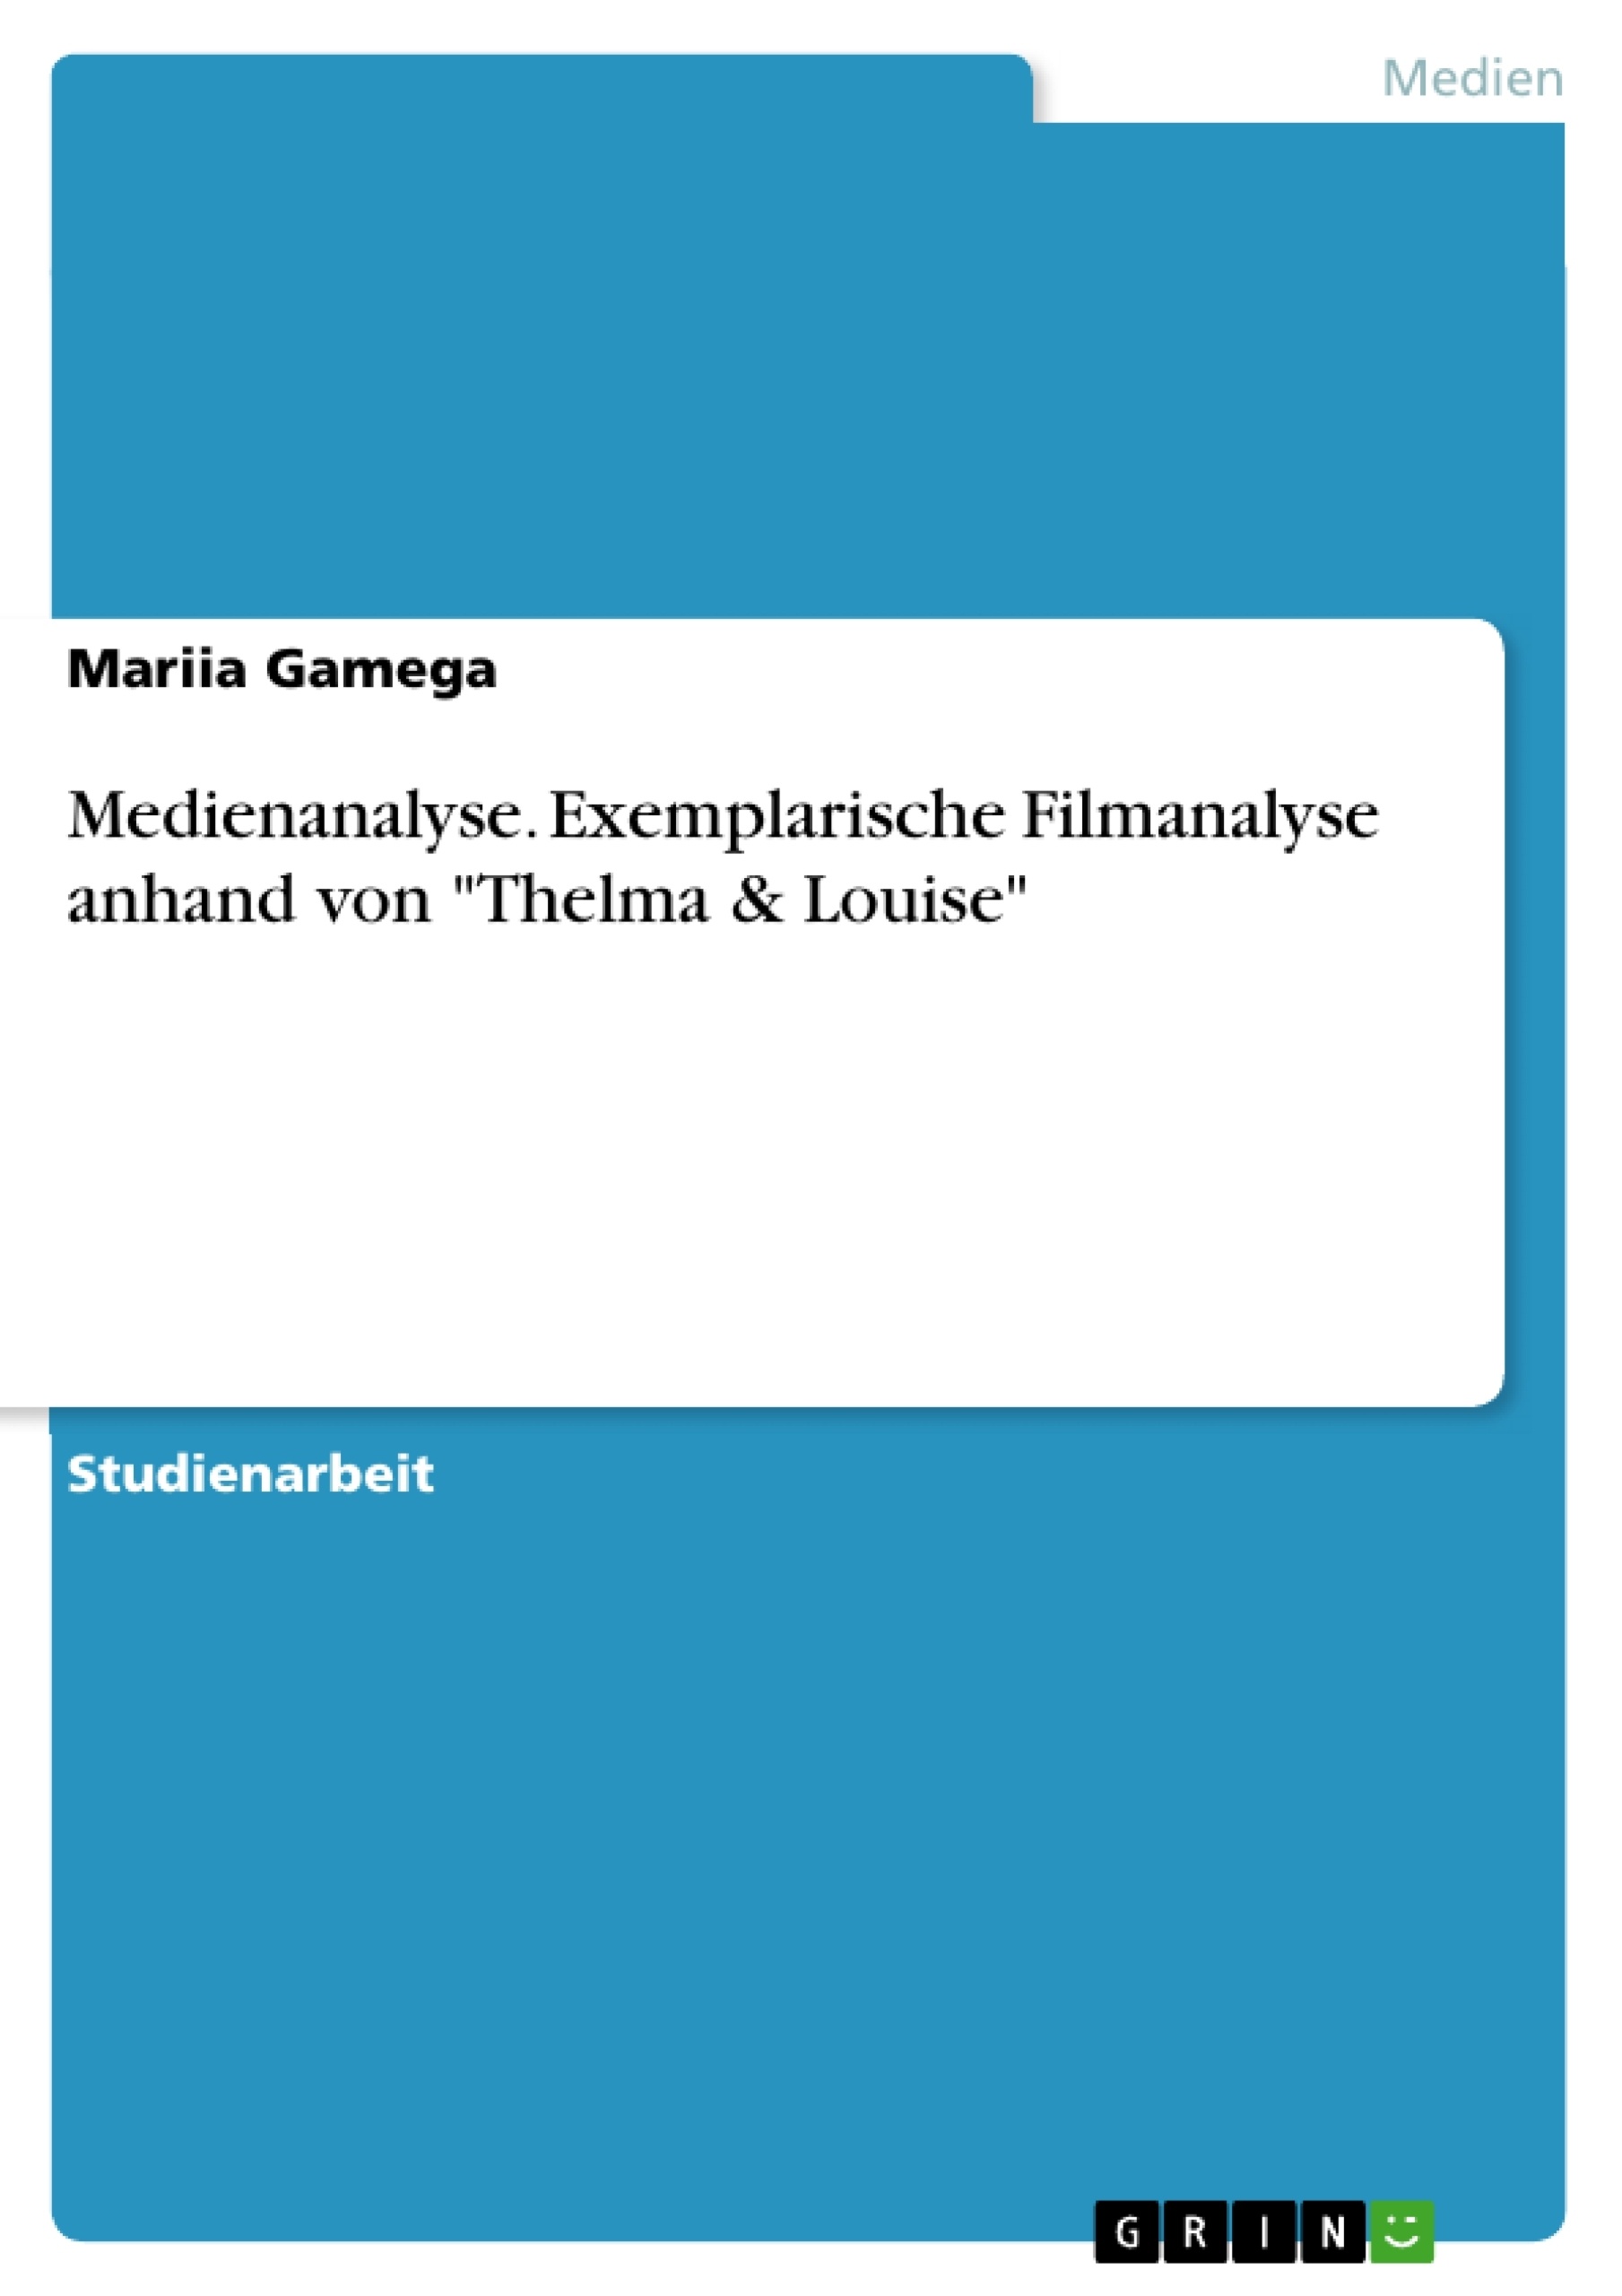 Título: Medienanalyse. Exemplarische Filmanalyse anhand von "Thelma & Louise"